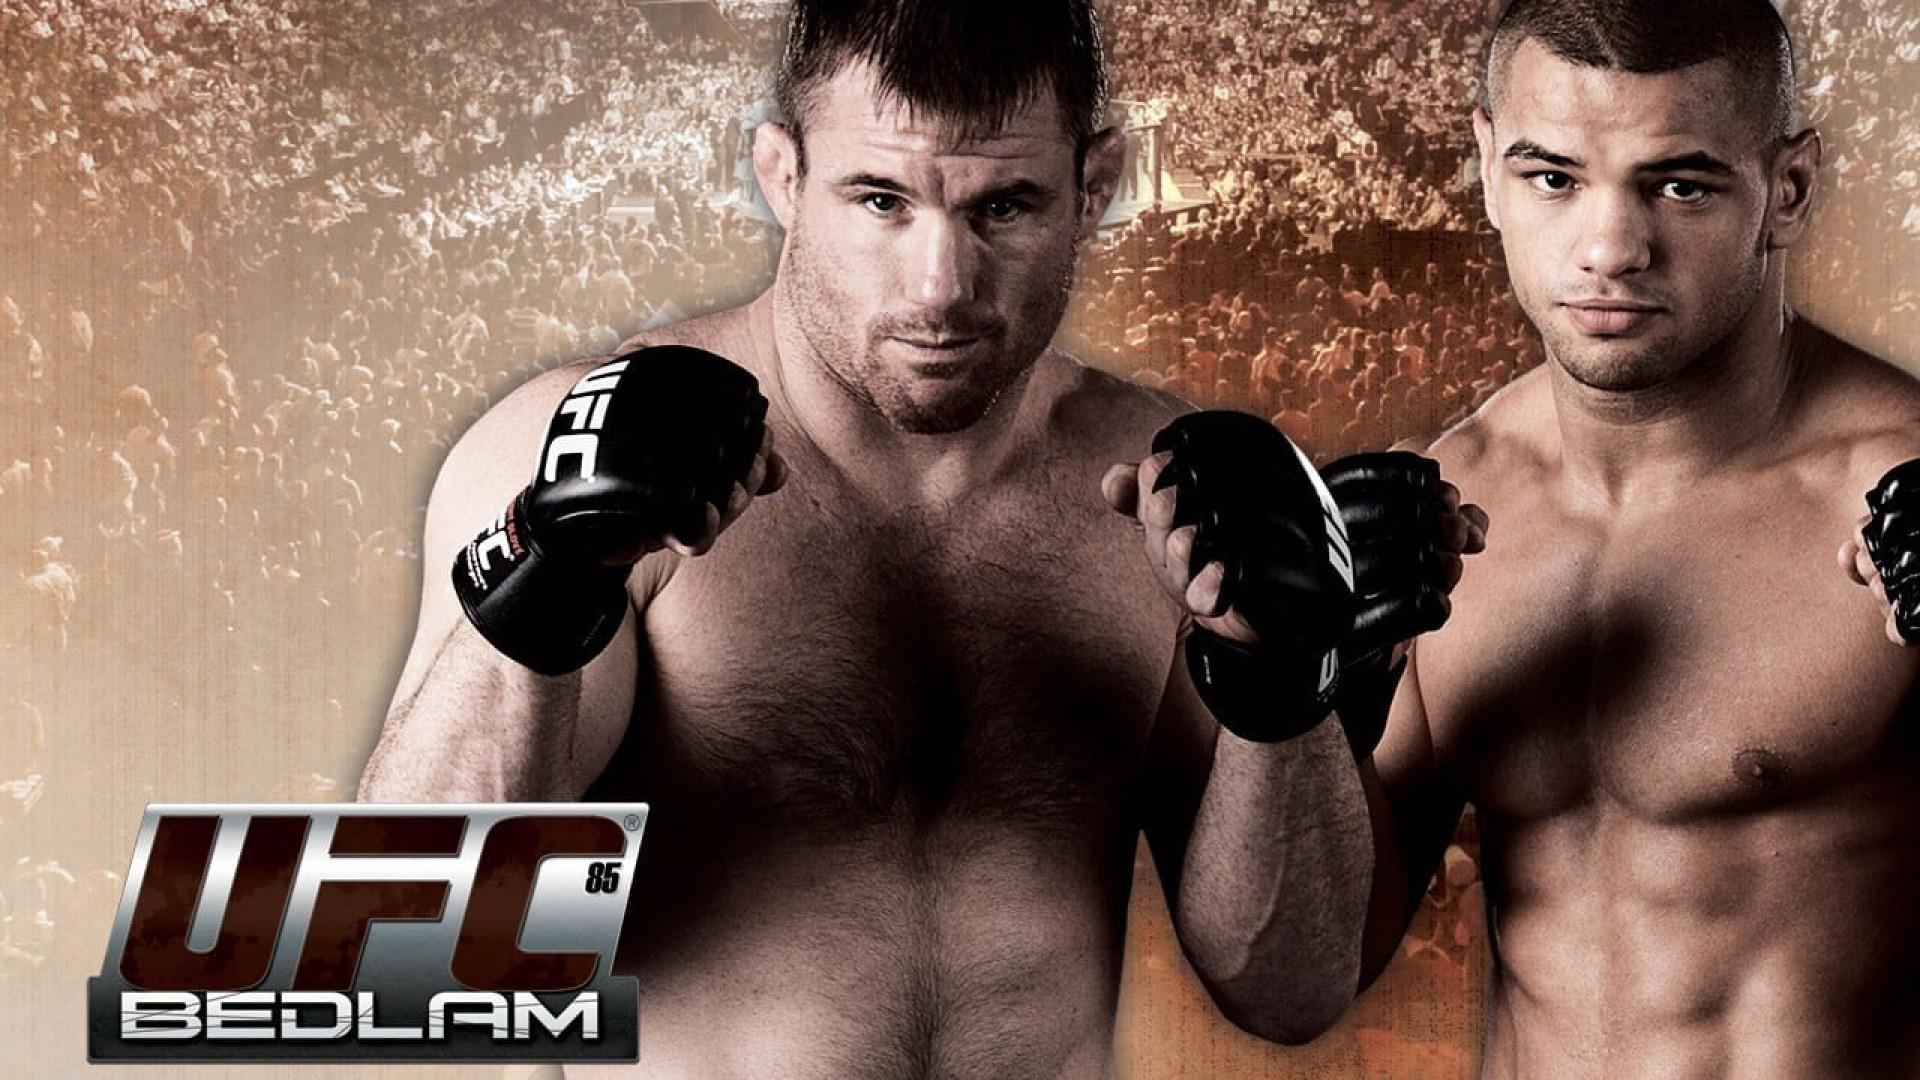 UFC 85: Bedlam